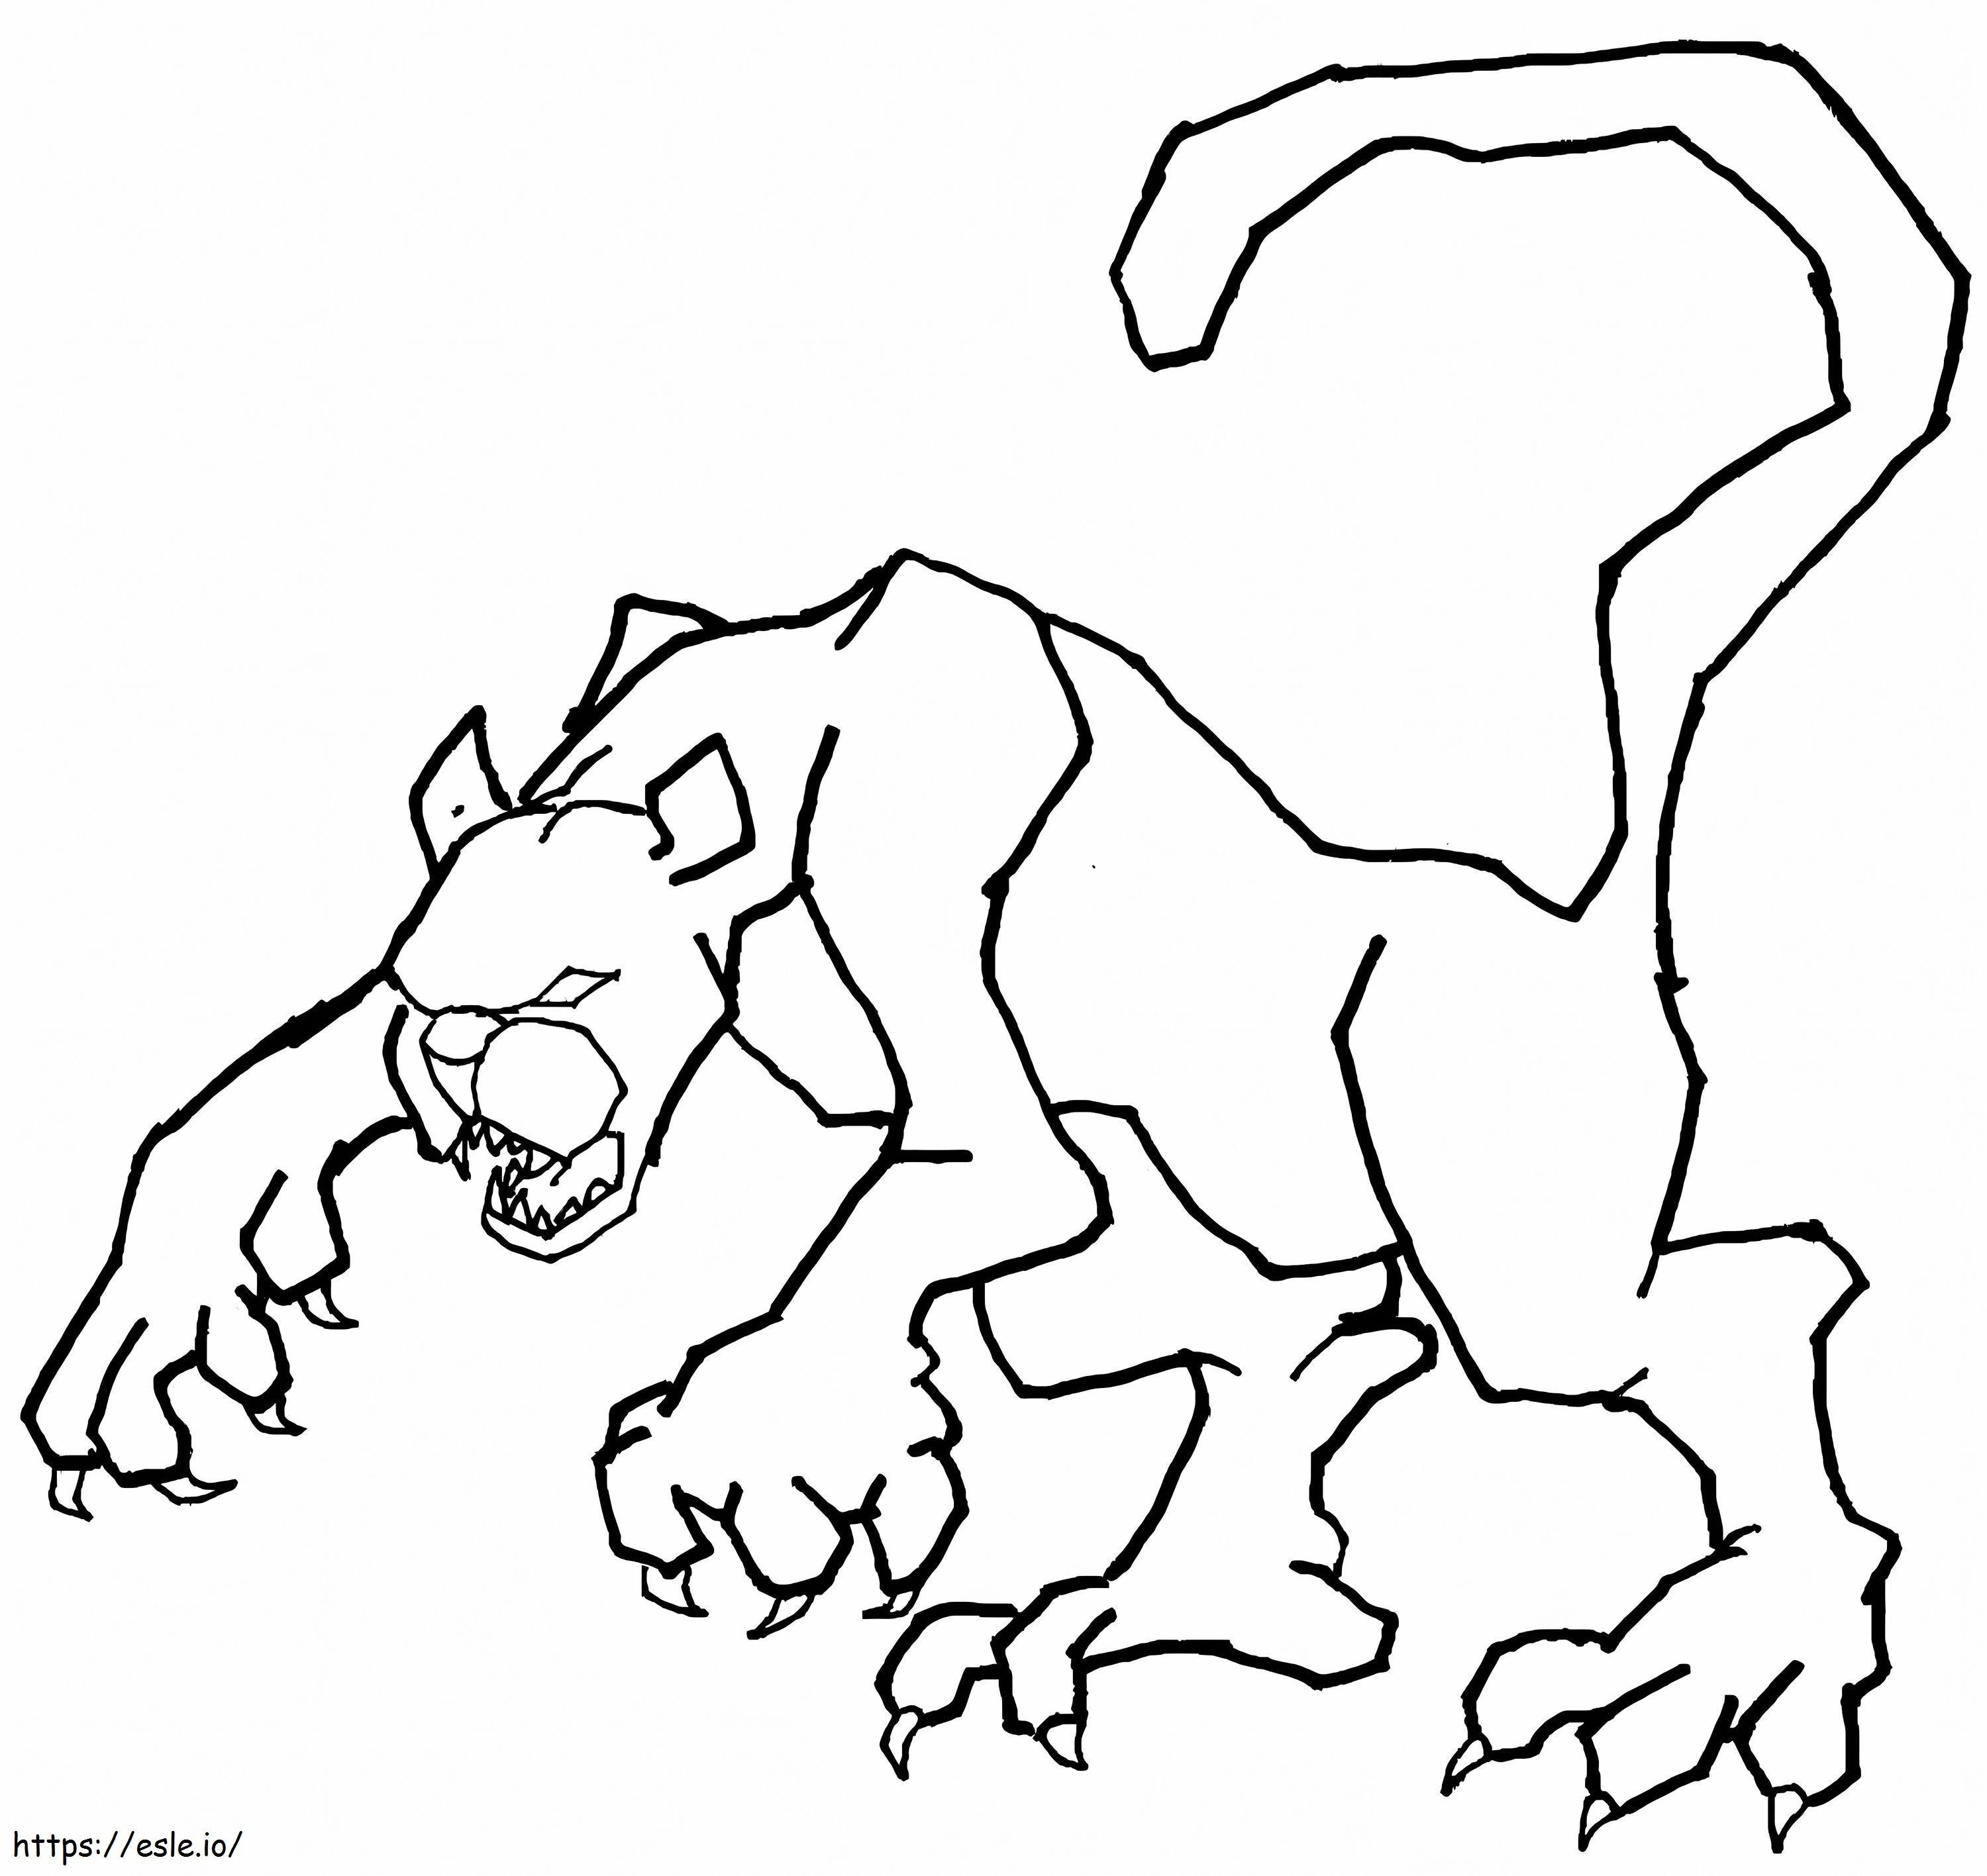 Dibujo de puma aterrador para colorear